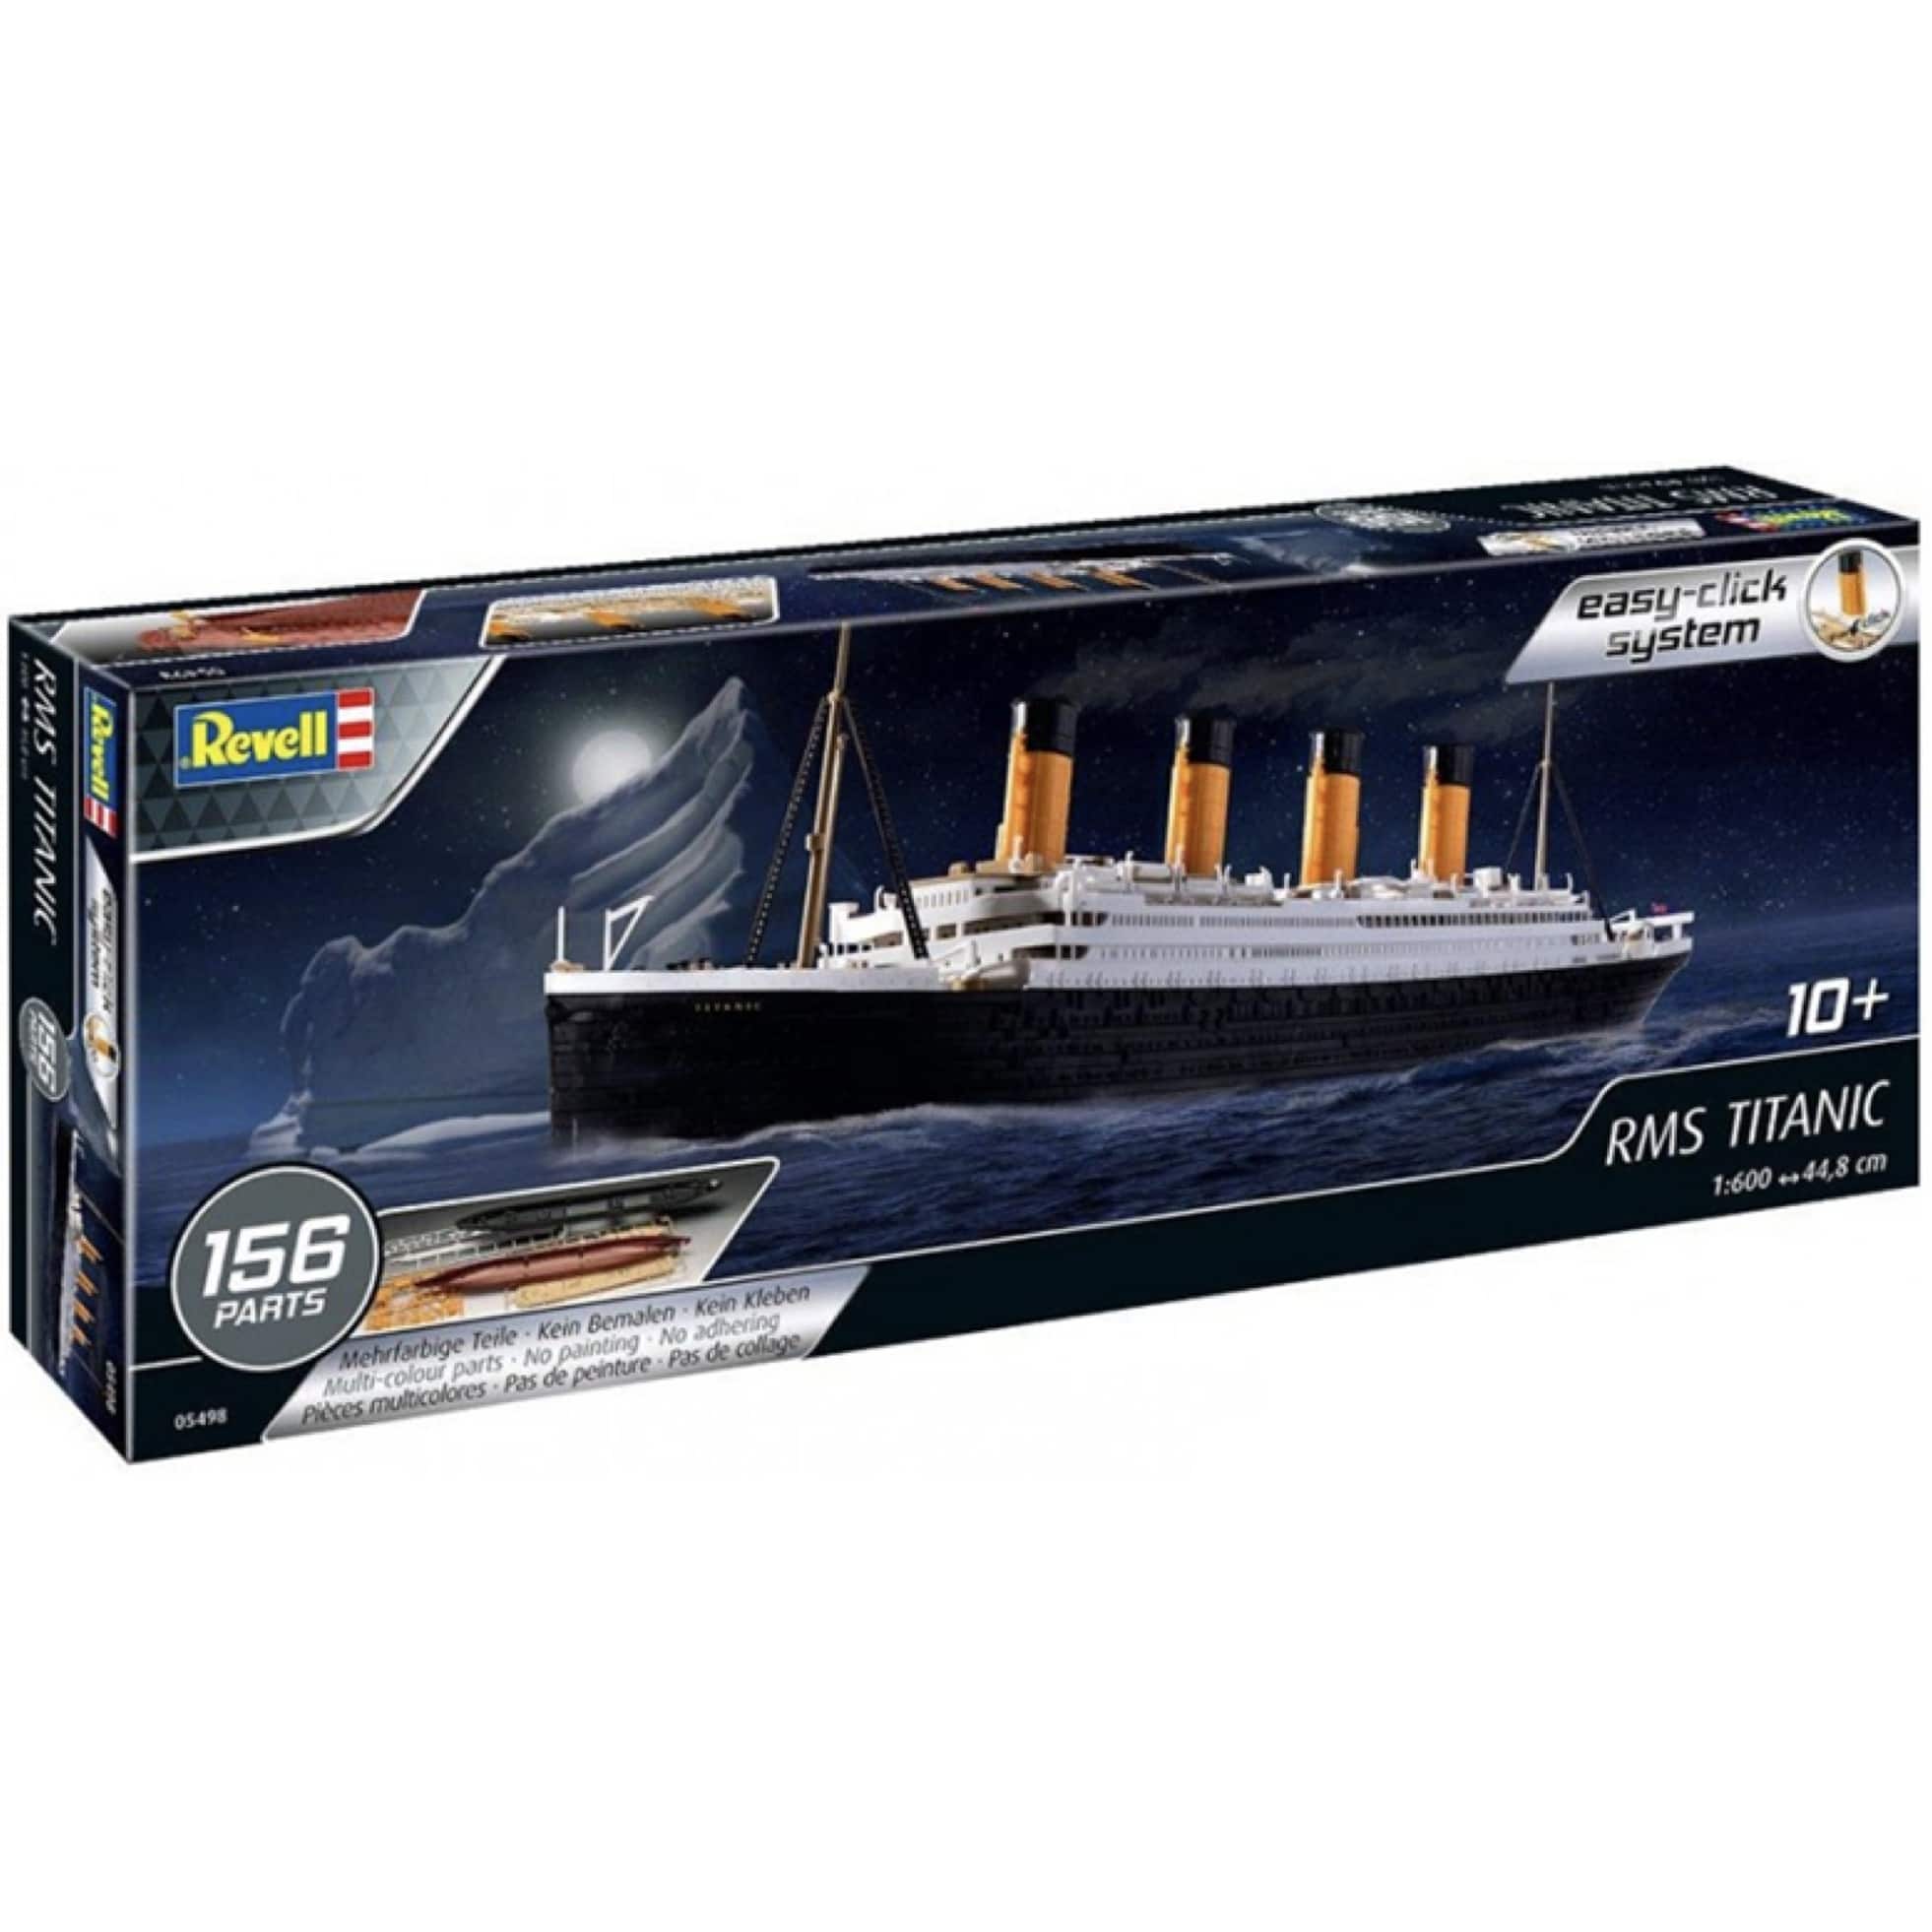 Rms Titanic Plastic Model Kit | Michaels